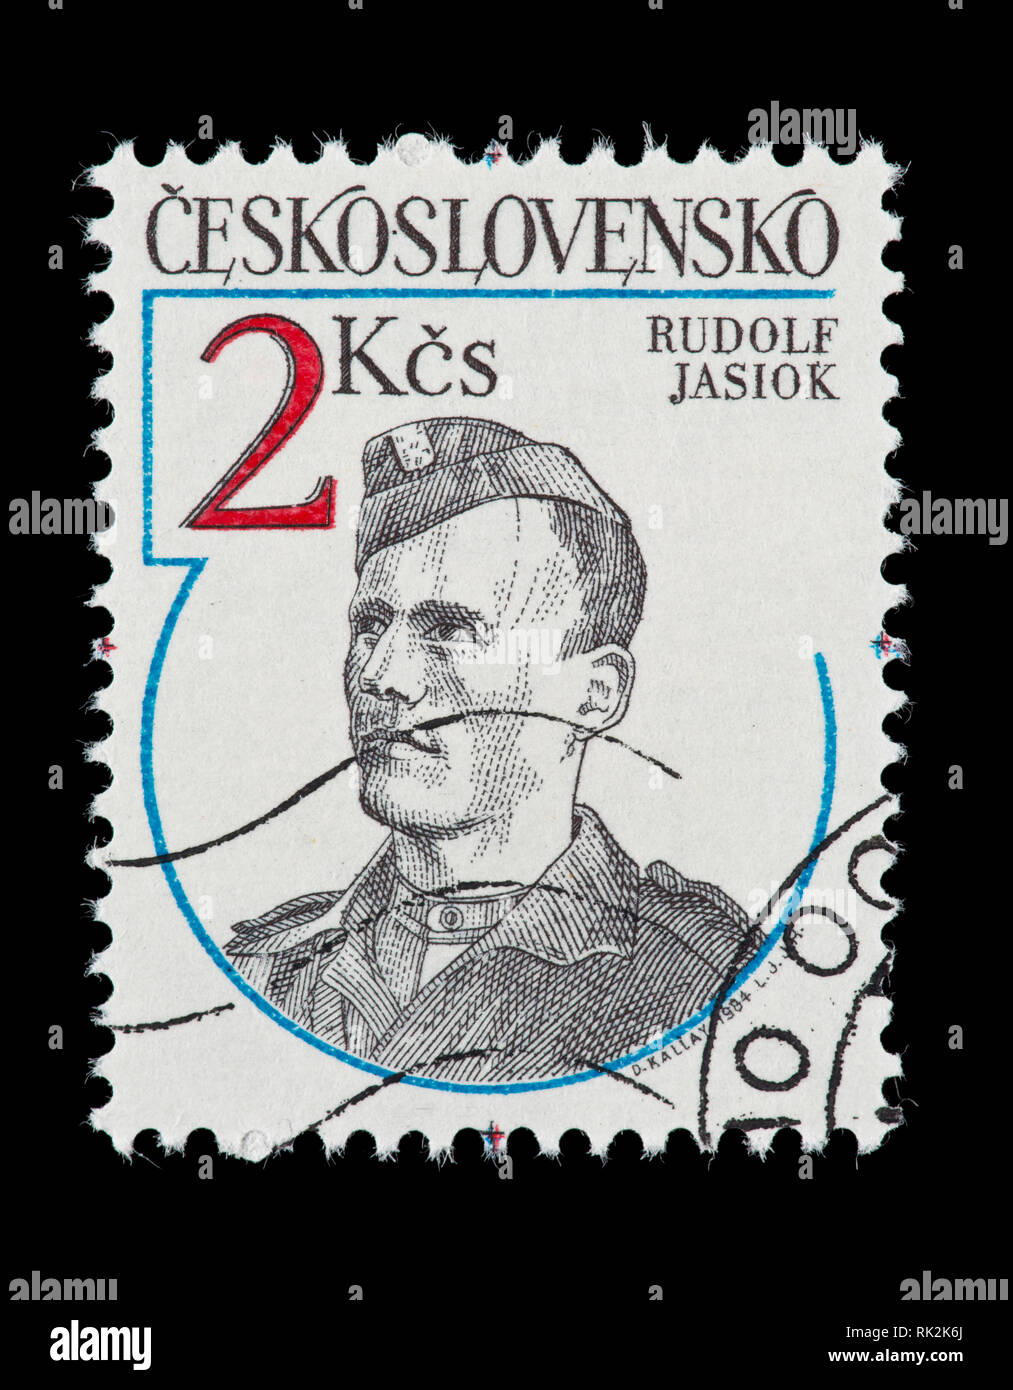 Briefmarke aus der Tschechoslowakei, Rudolph Jasiok, 2. Weltkrieg Widerstandskämpfer. Stockfoto